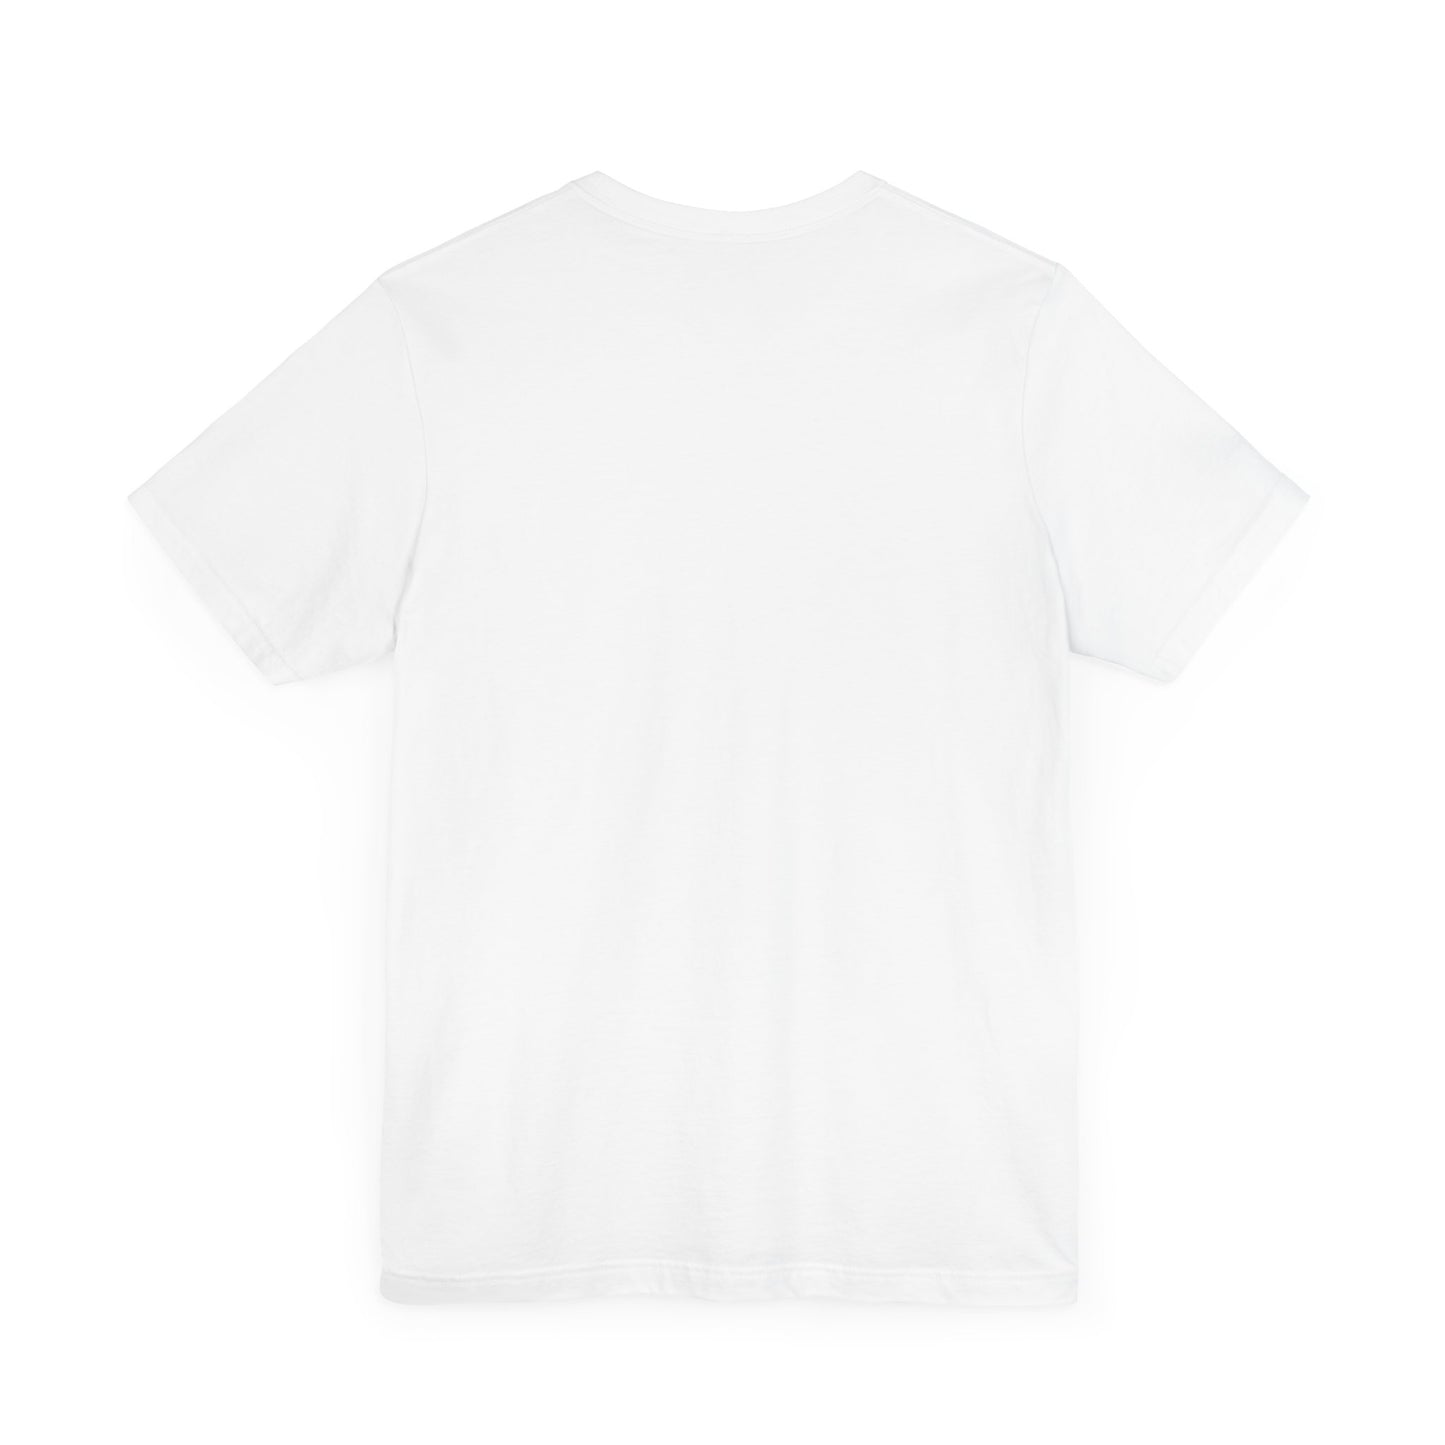 Carjitsu T-shirt